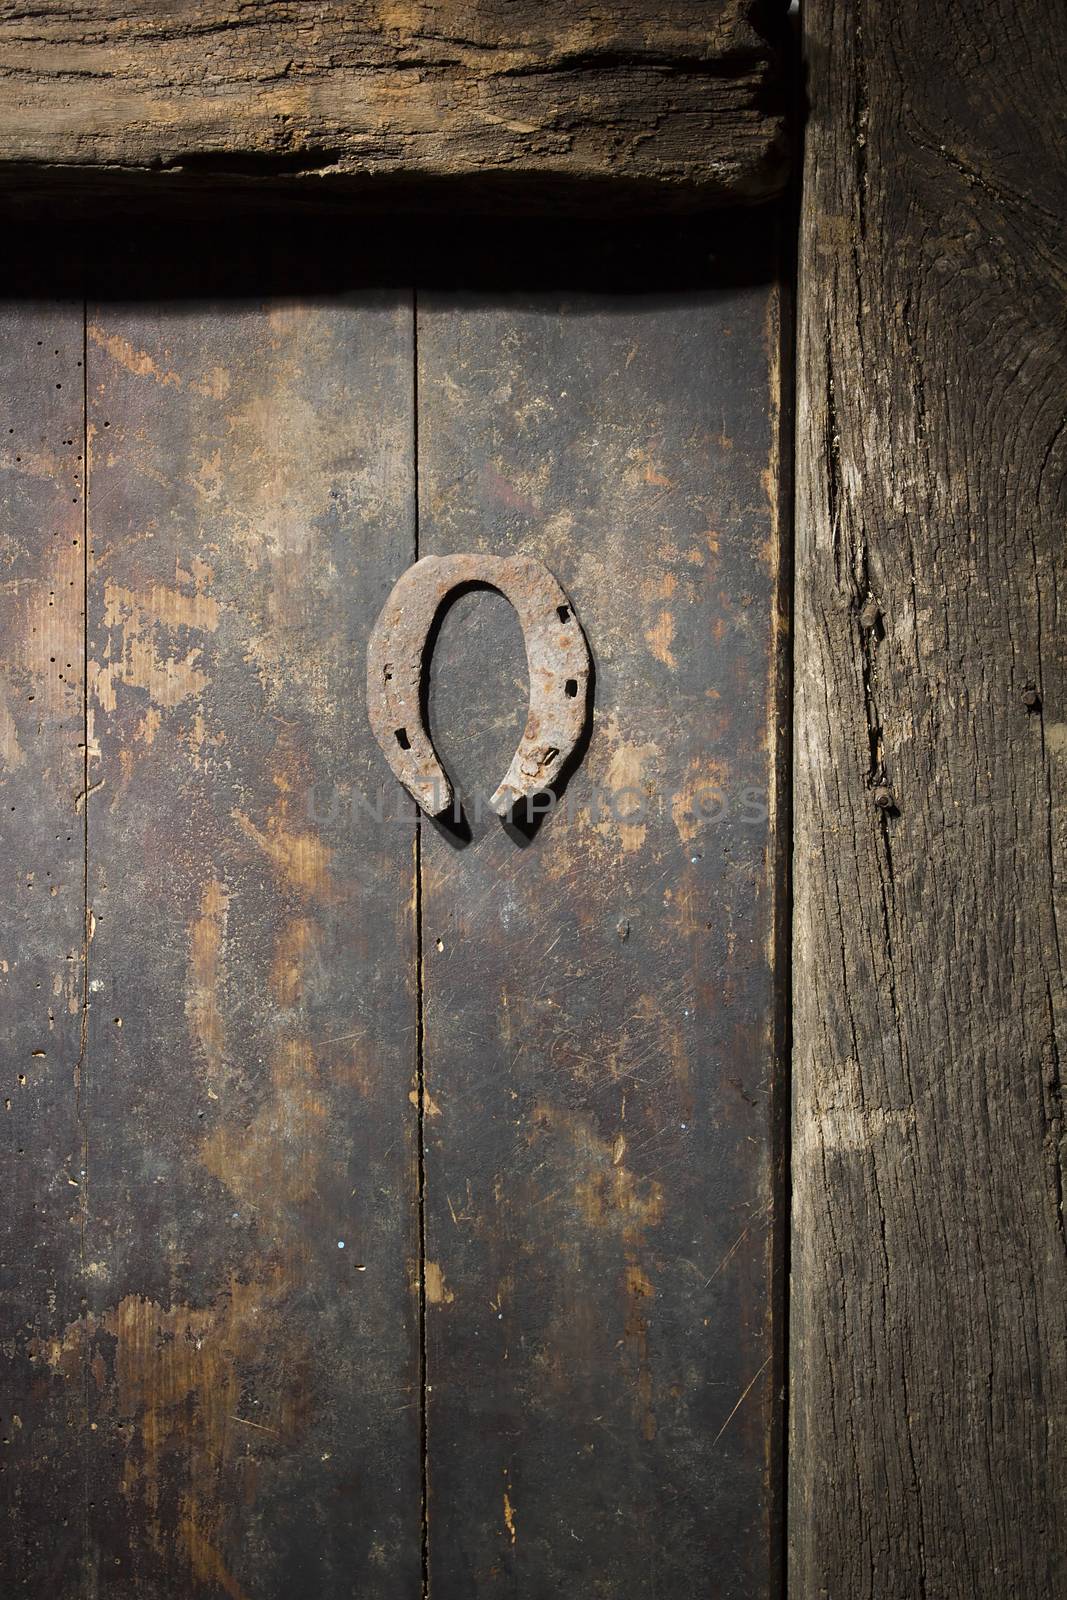 Rusty horseshoe on an ancient wooden door